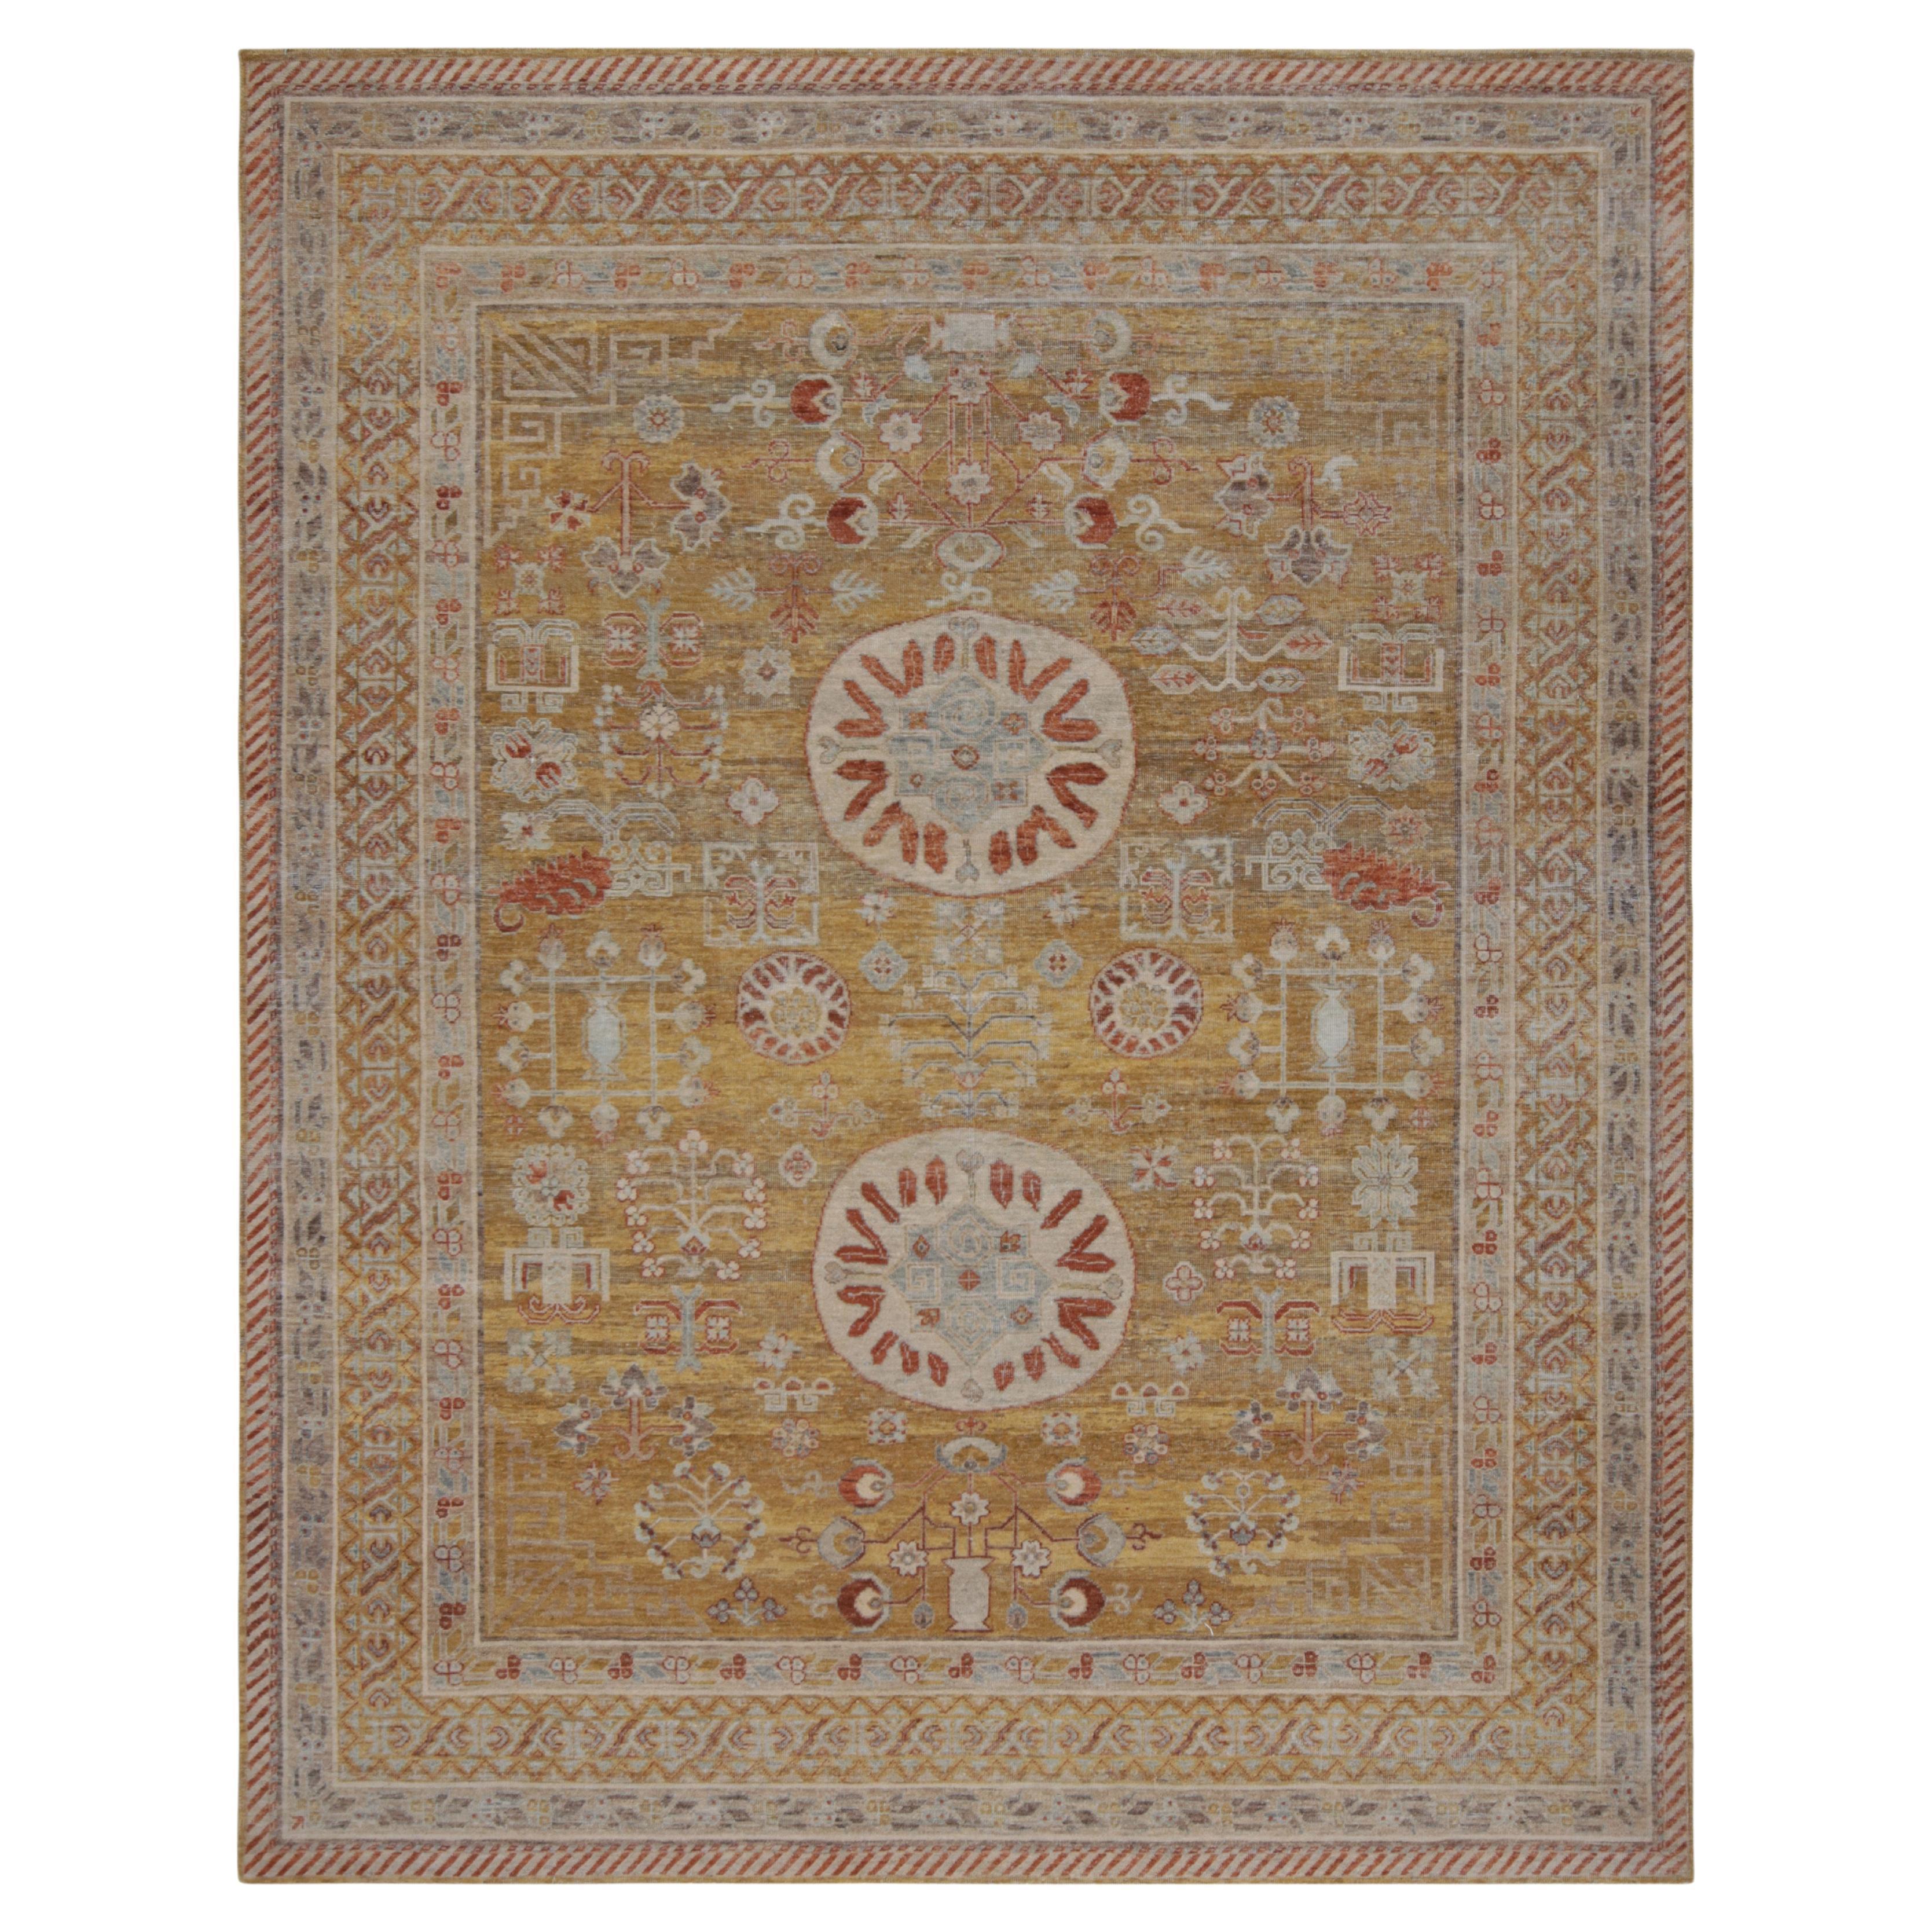 Khotan-Teppich von Rug & Kilim in Gold und Rot mit geometrischen Mustern